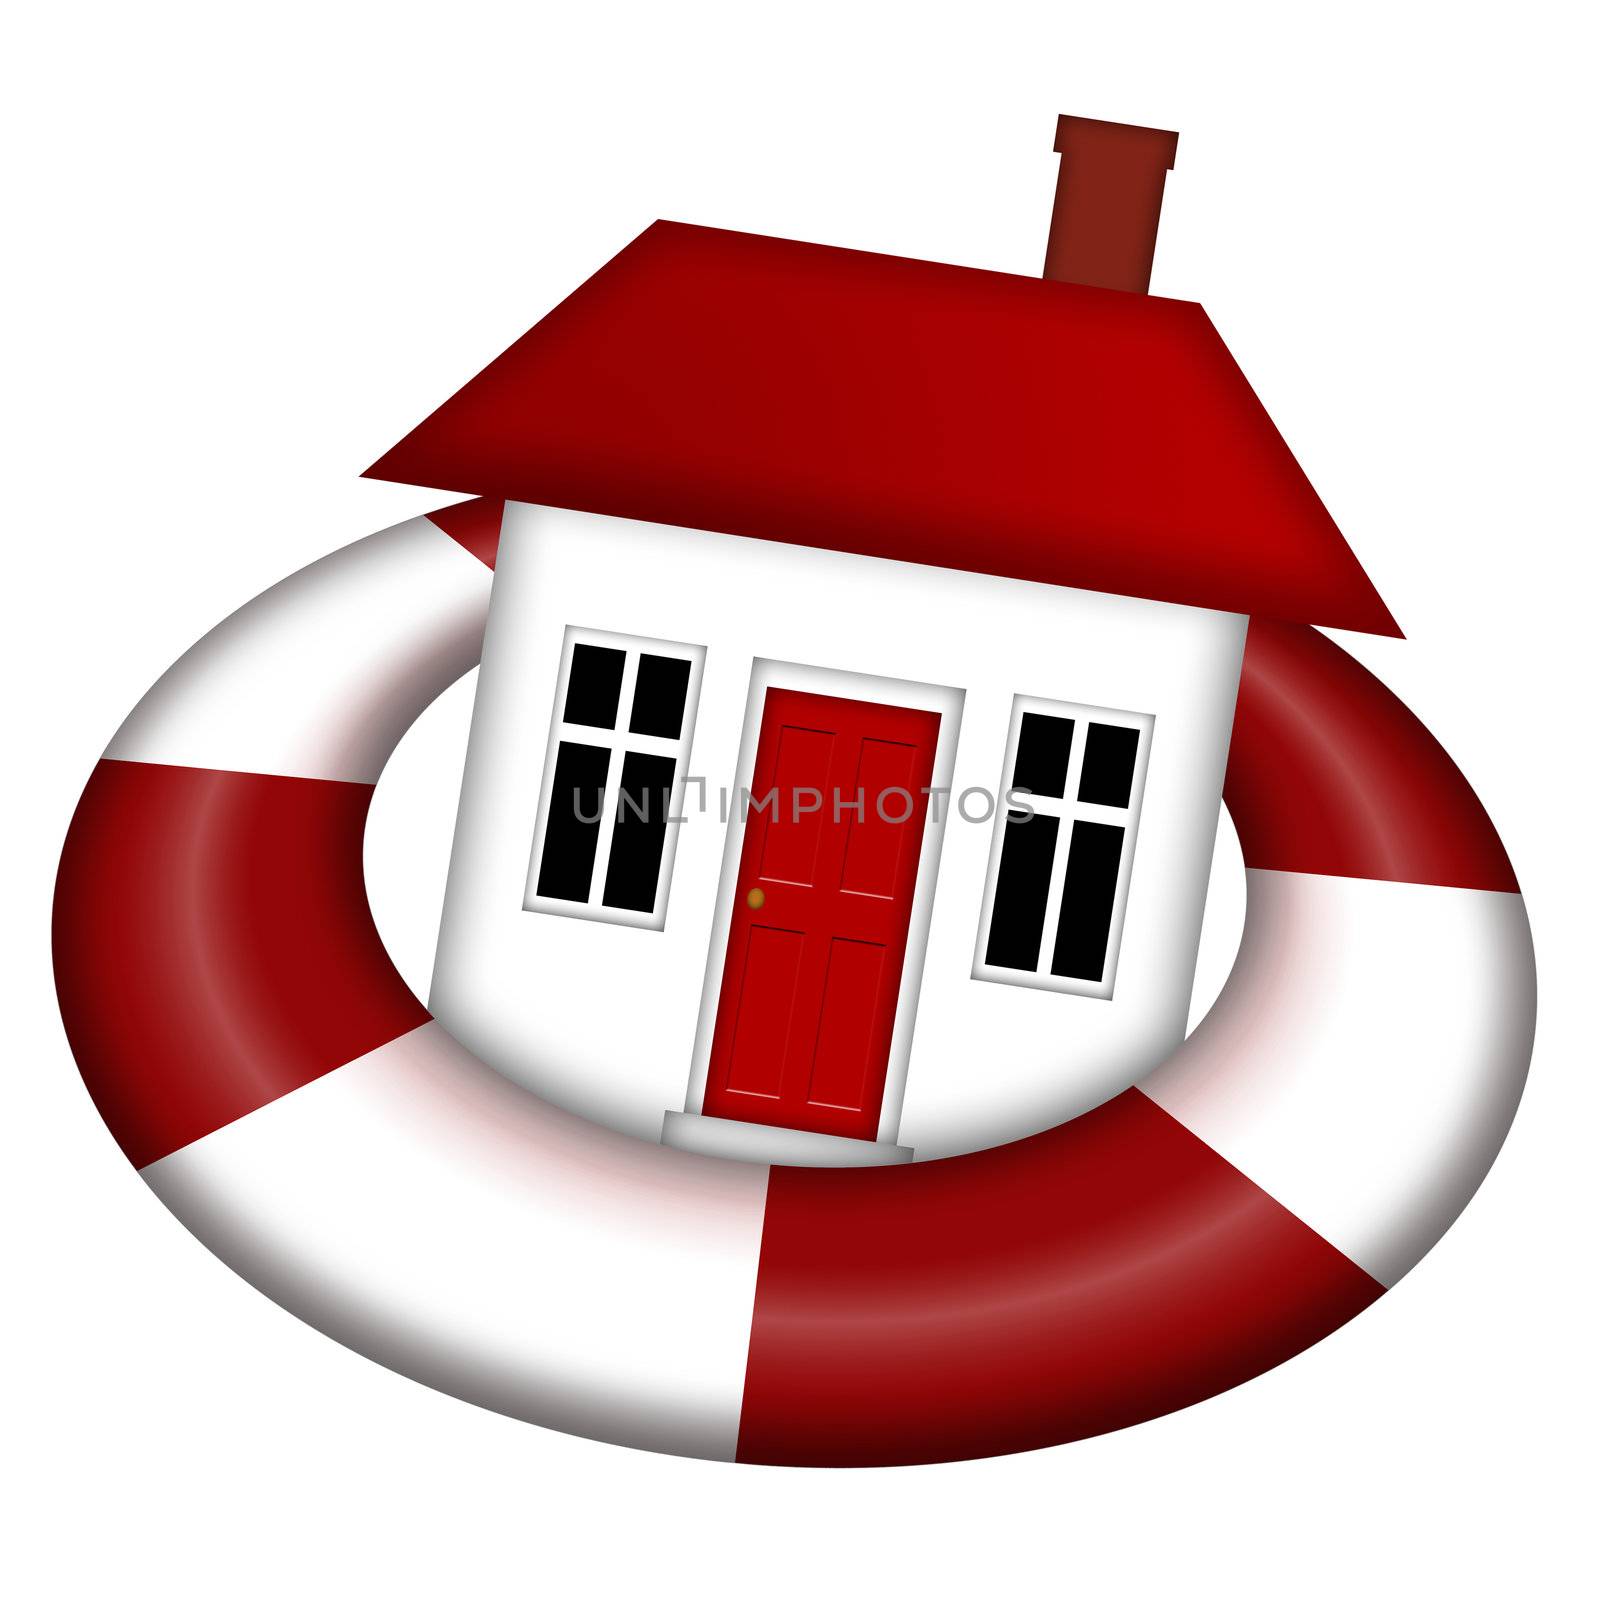 House Staying Afloat on Lifesaver Illustration